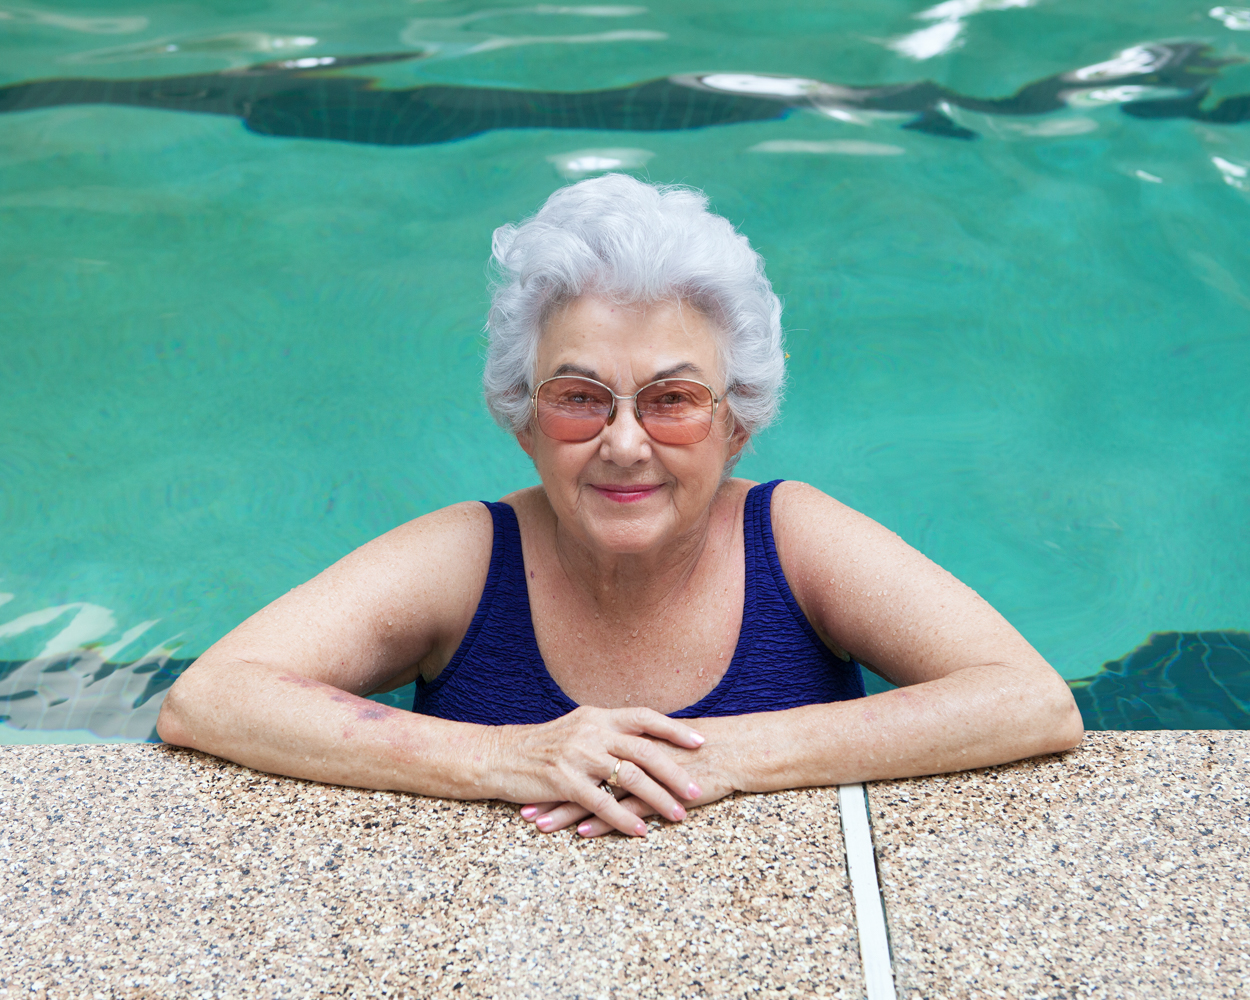 Benita Mc Ginn (81 ans) à la piscine du Beardsley recreation center, Sun City West Originaire du Missouri, Benita est arrivée à Sun City West en 1995. Entre parties de golf et sessions de marche en piscine, elle vit paisiblement ses vieux jours heureux.